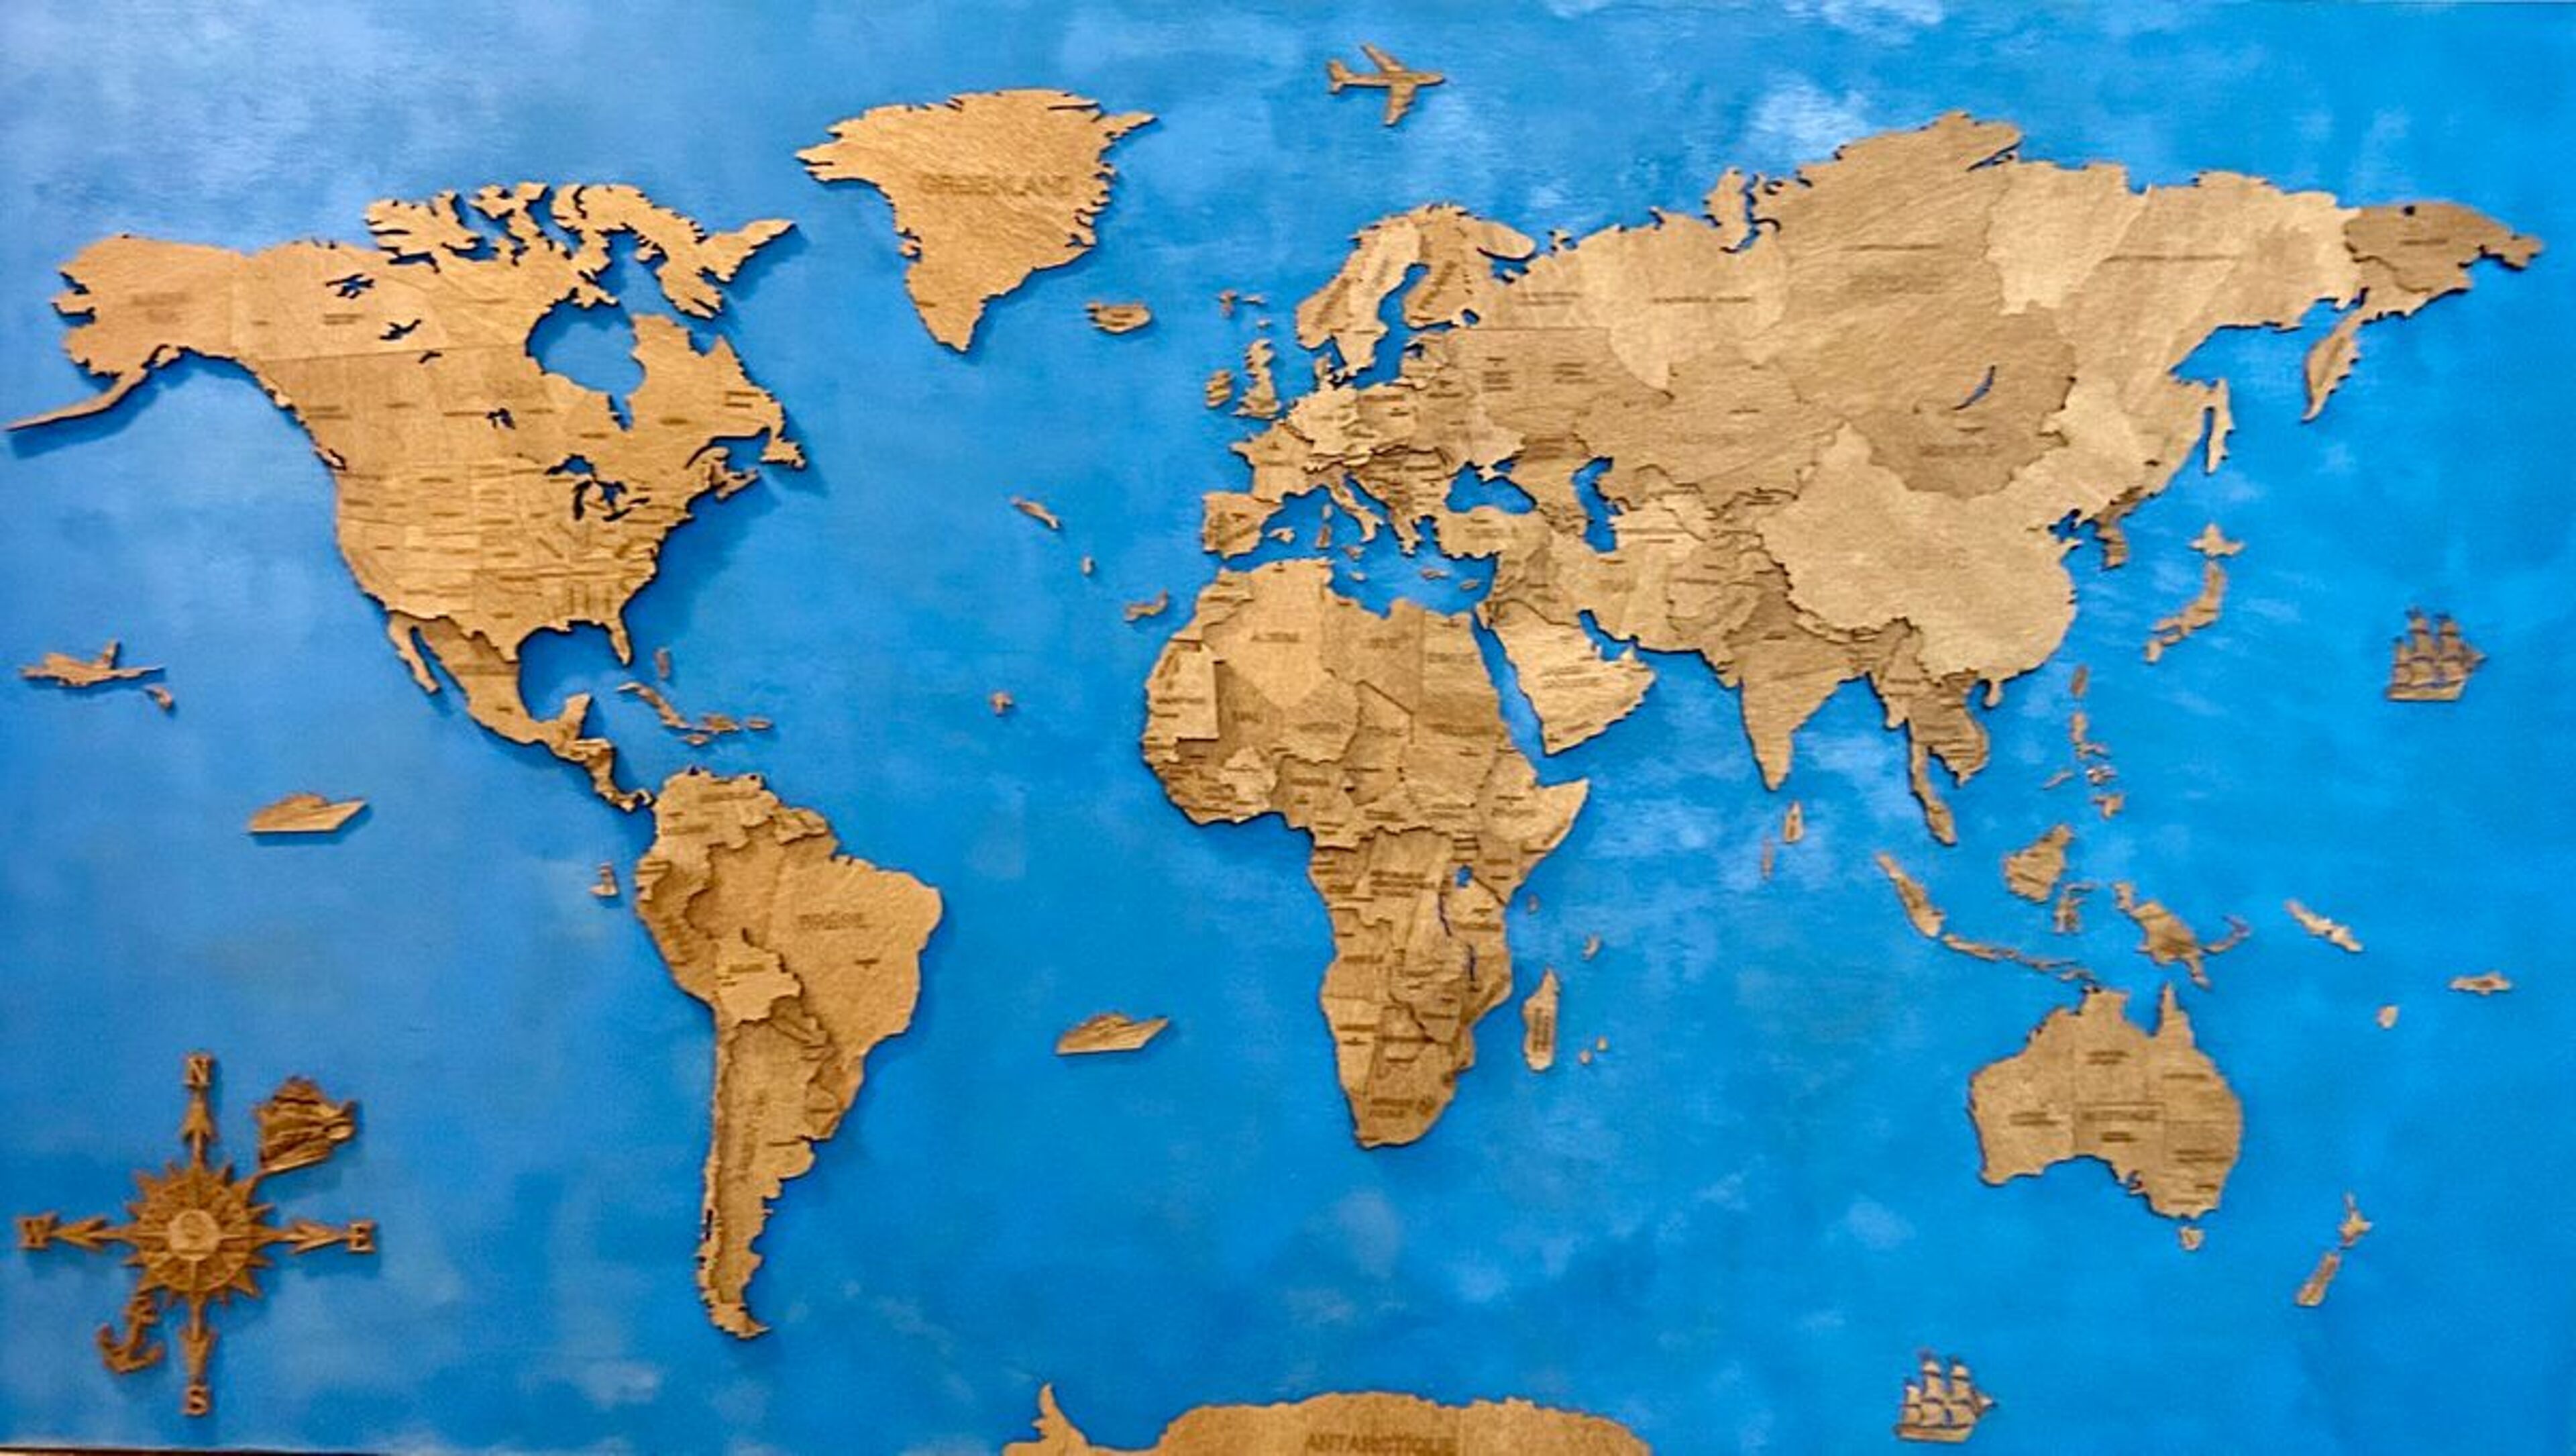 Reseña de Mapa del mundo de madera - imagen de Tristan C.